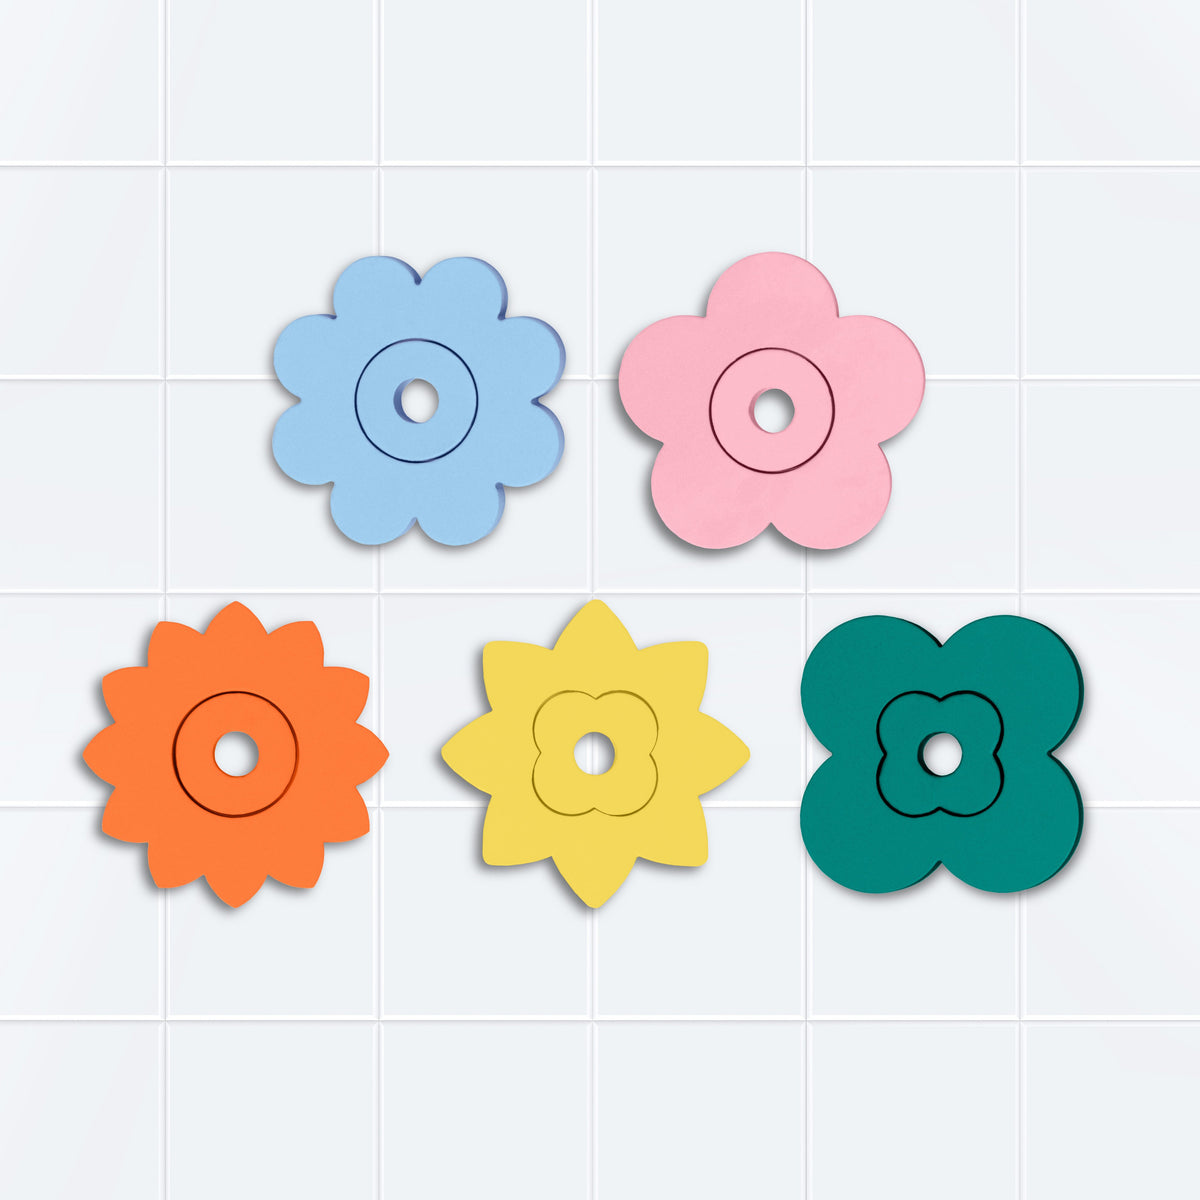 quut-quutopia-flower-power-bath-puzzle- (1)